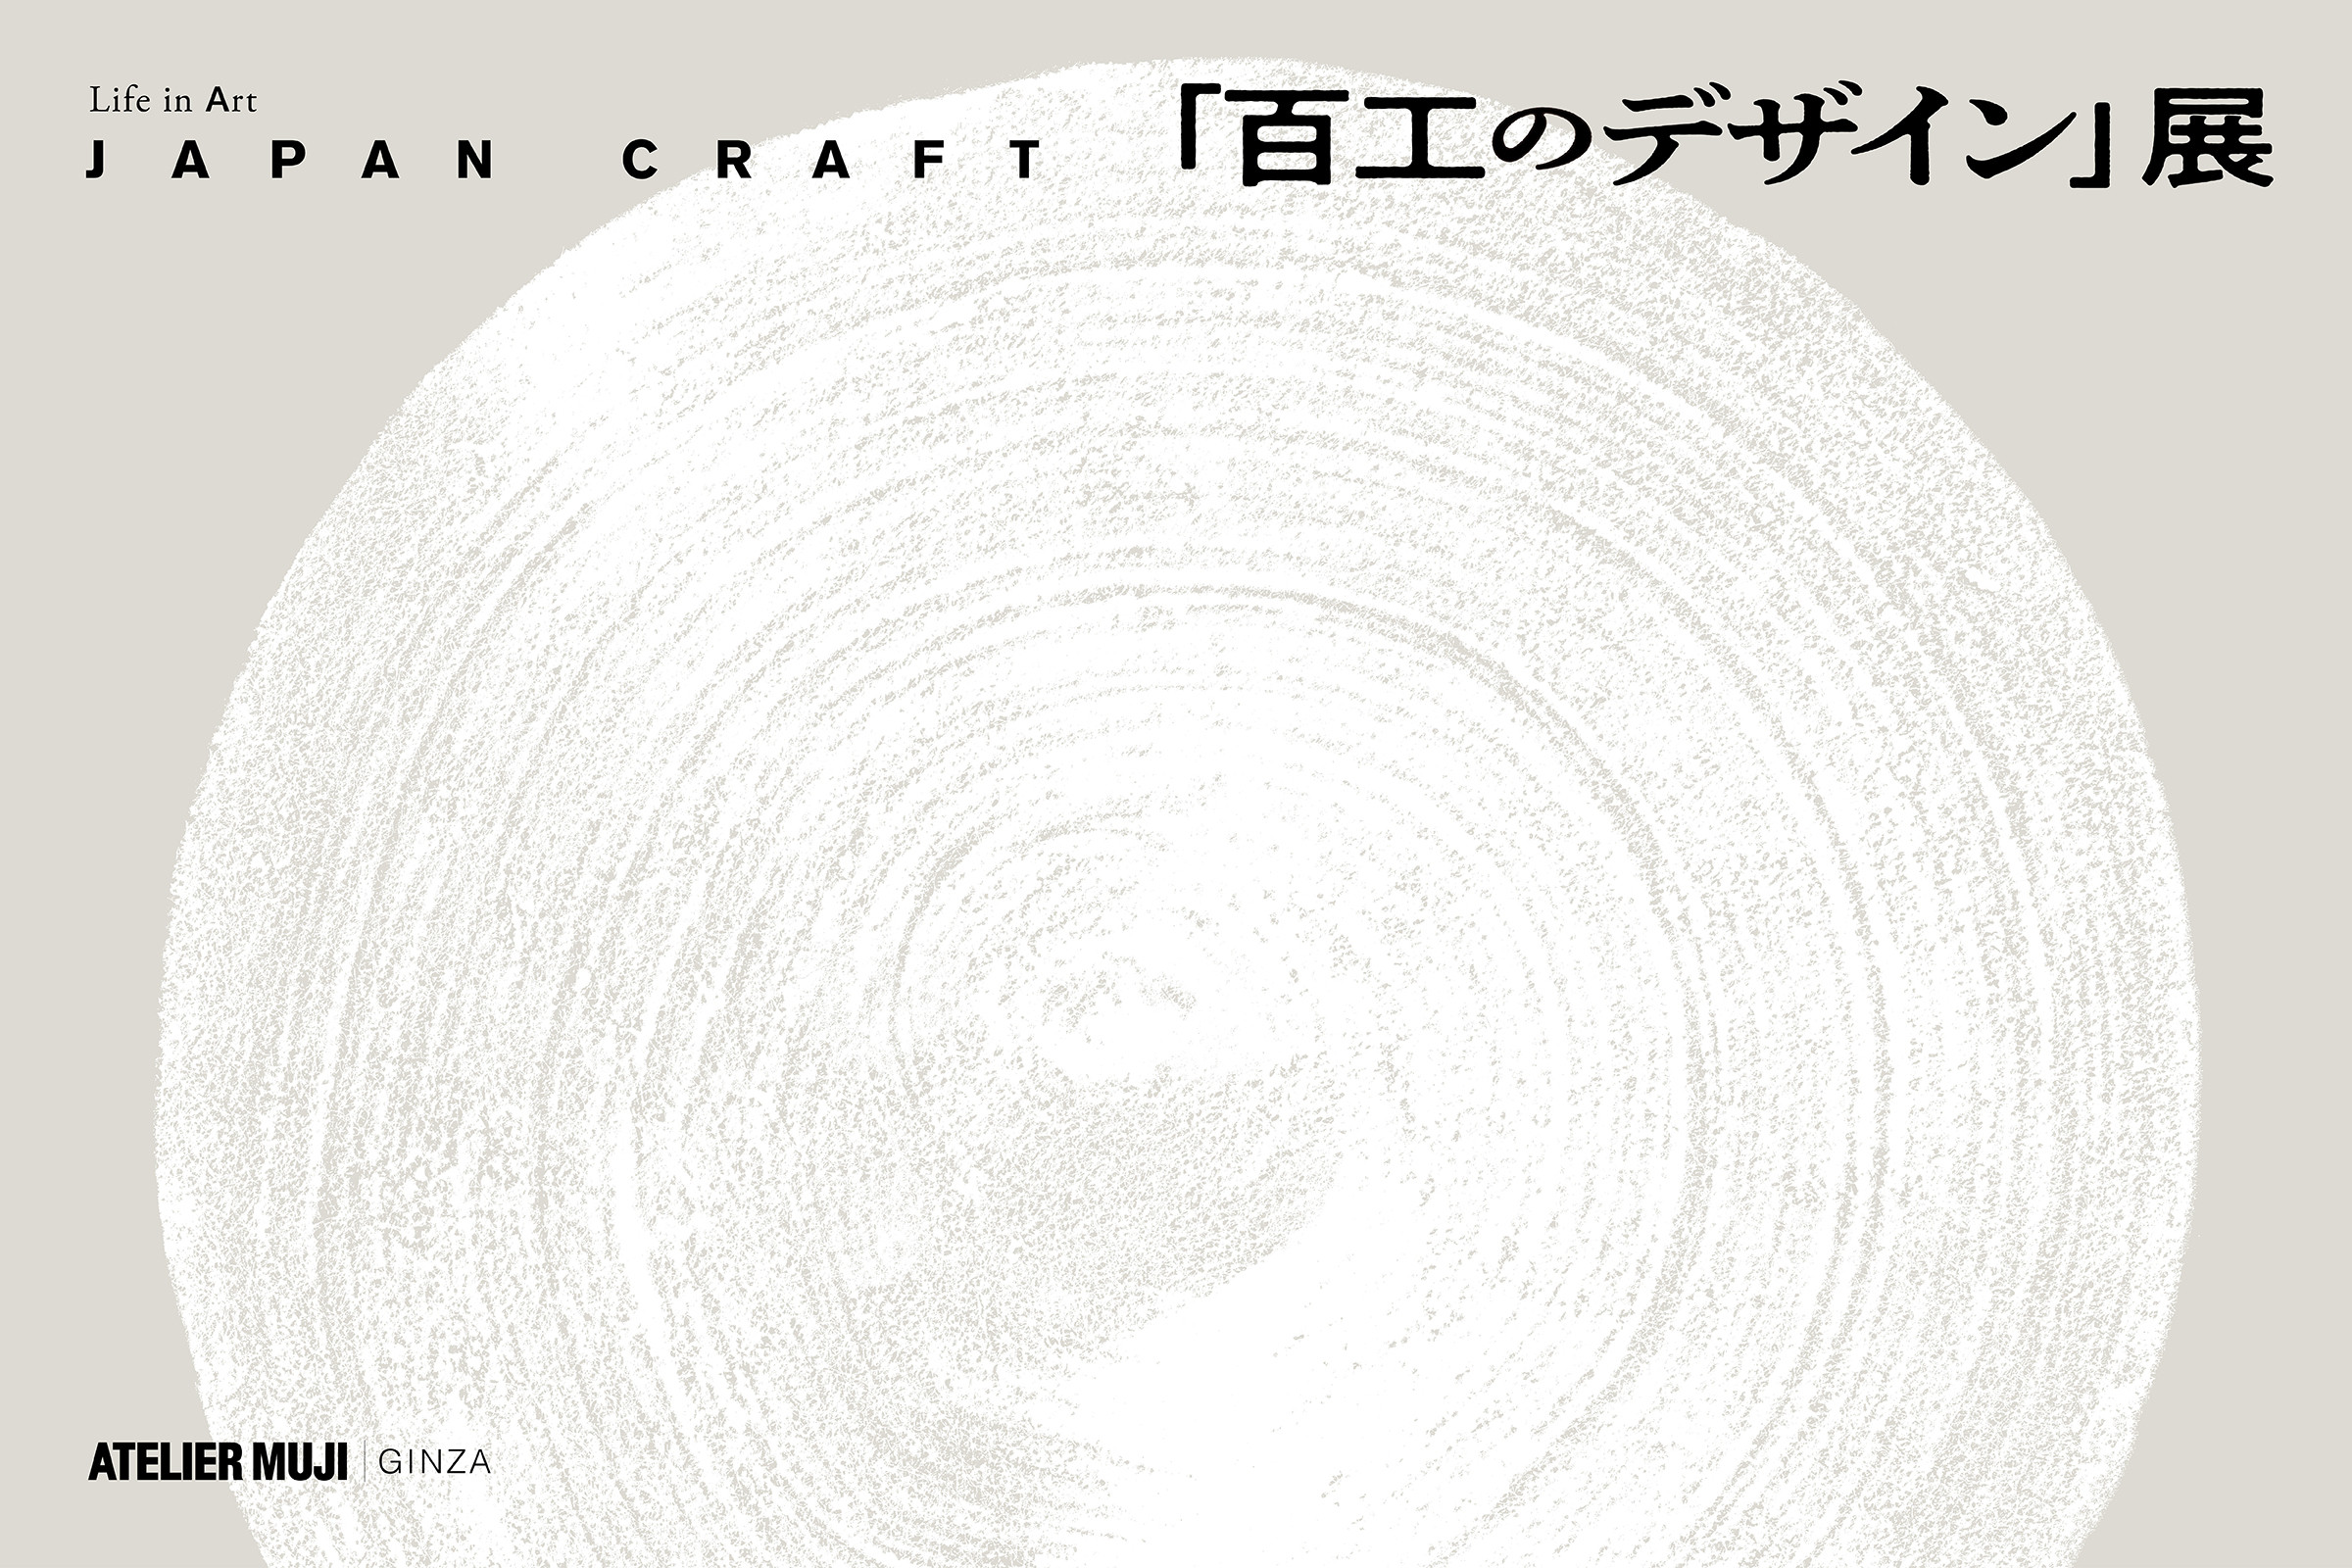 JAPAN CRAFT 「百工のデザイン」展